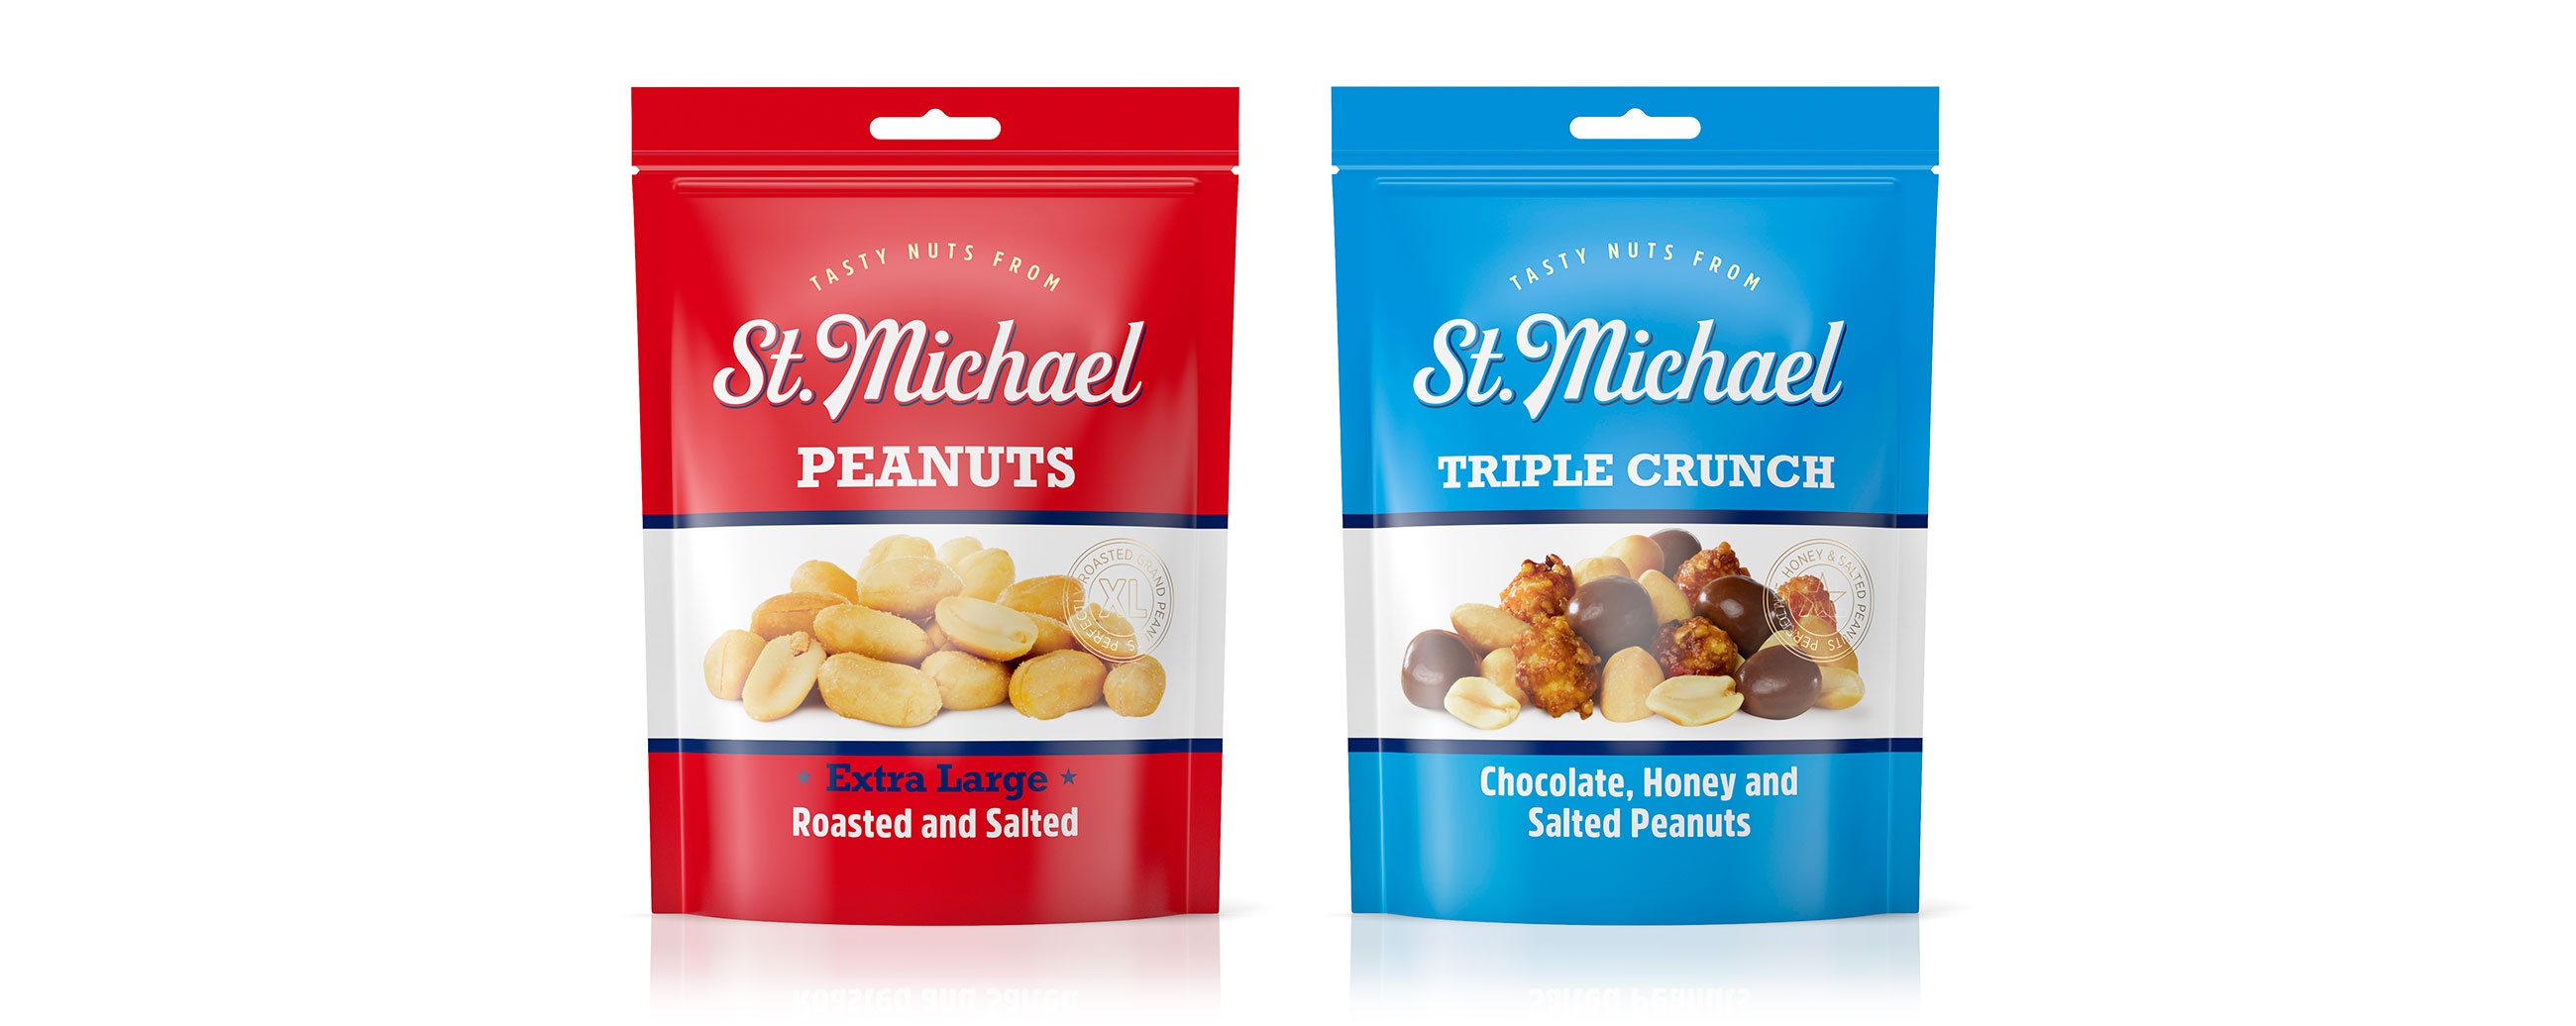 St. Michael nuts nøtter, peanuts peanøtter, triple crunch. Emballasje packaging design.